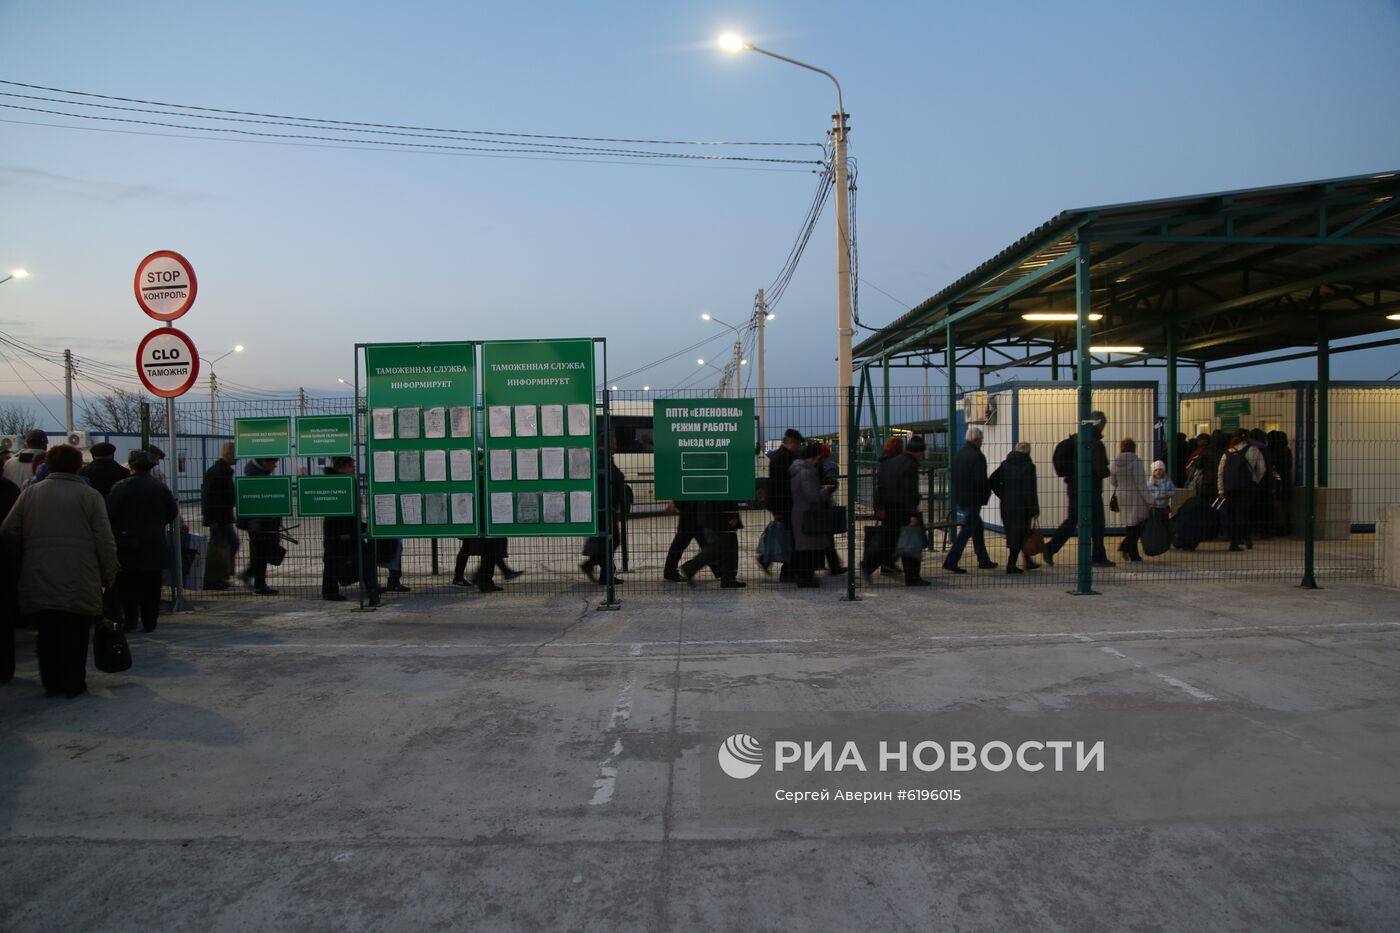 Украина ограничила количество КПП на границе с Донбассом